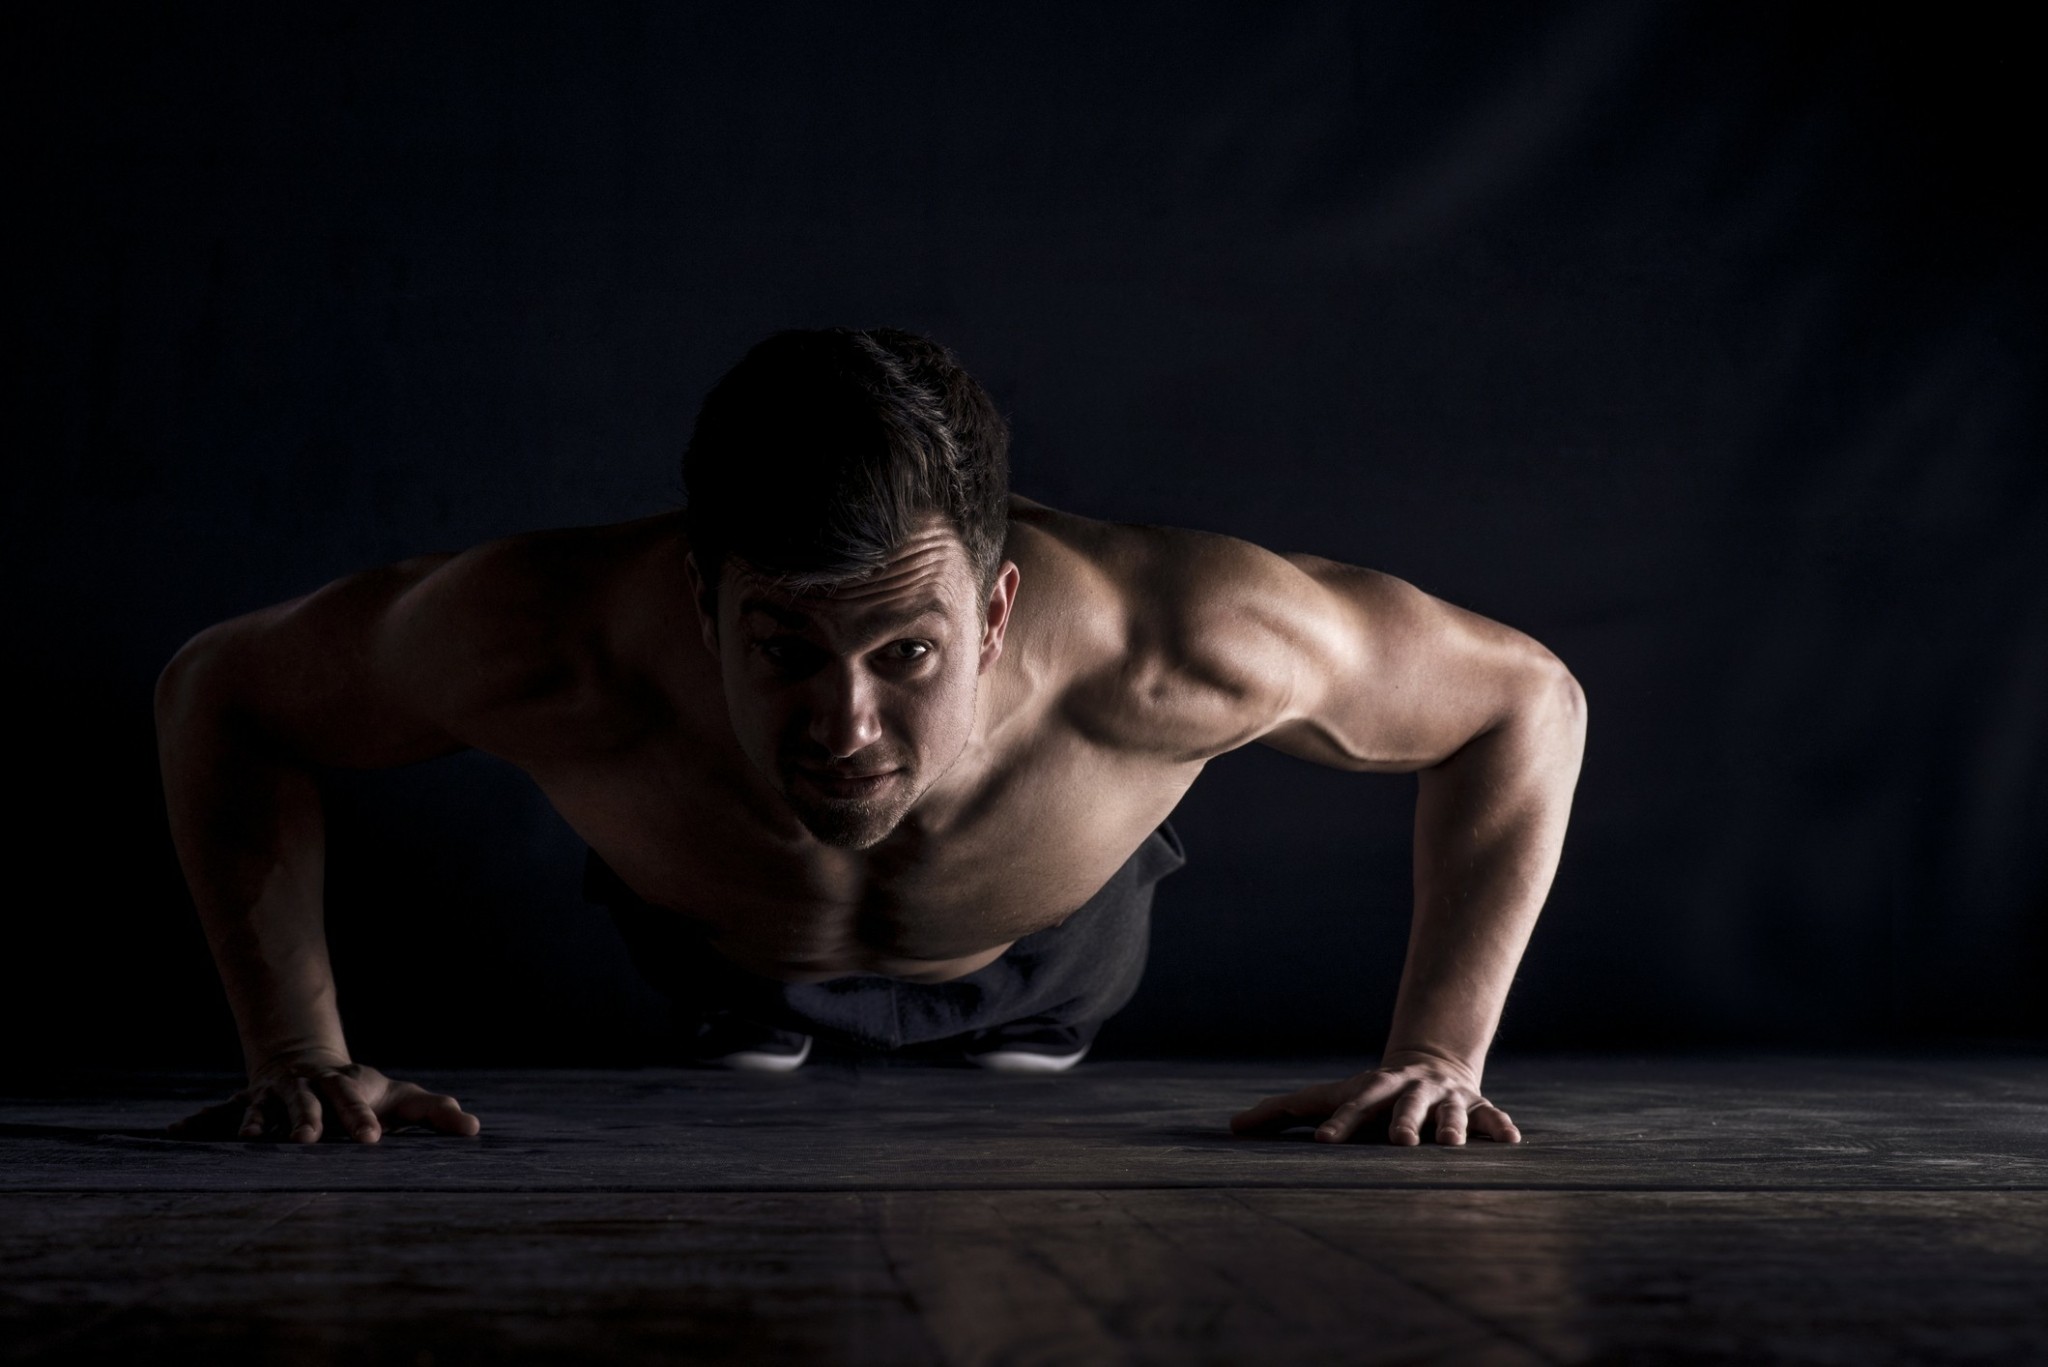 Τι συμβαίνει στο σώμα αν κάνουμε 200 push-ups την ημέρα, για 1 μήνα